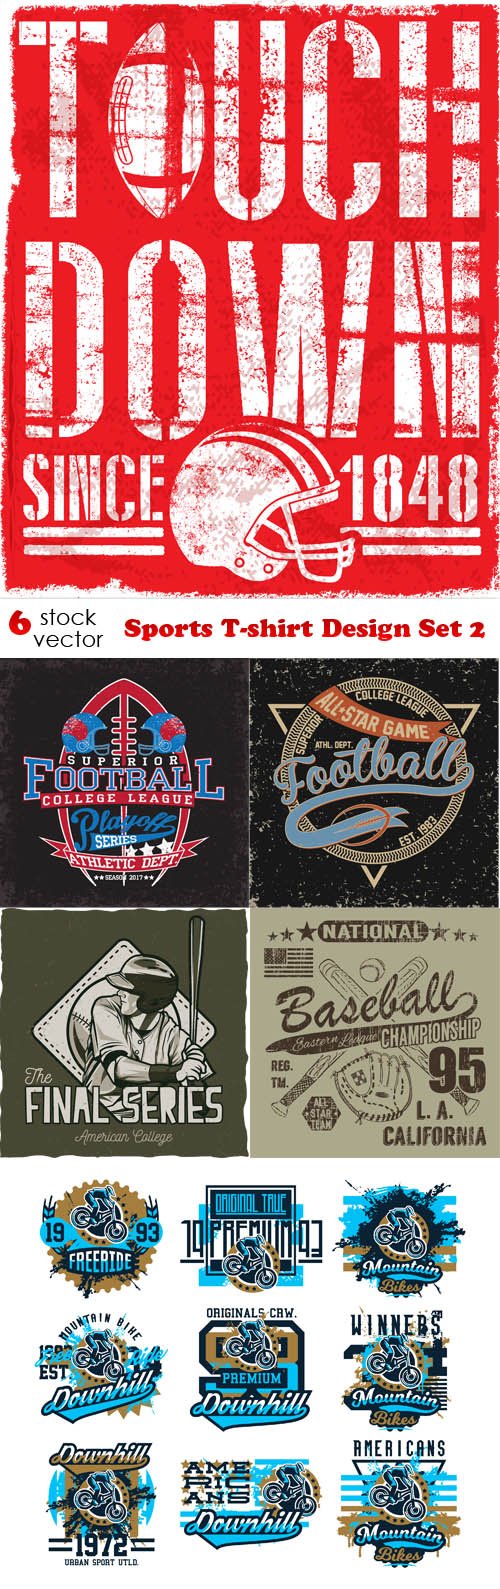 Vectors - Sports T-shirt Design Set 2